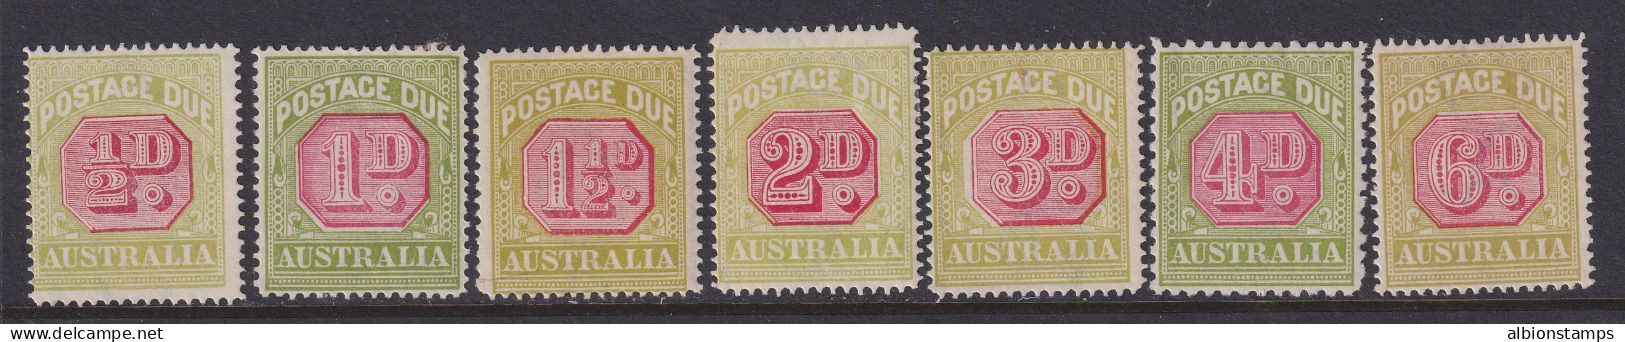 Australia, Scott J50-J56 (SG D91-D95, D97-D98), MLH - Postage Due